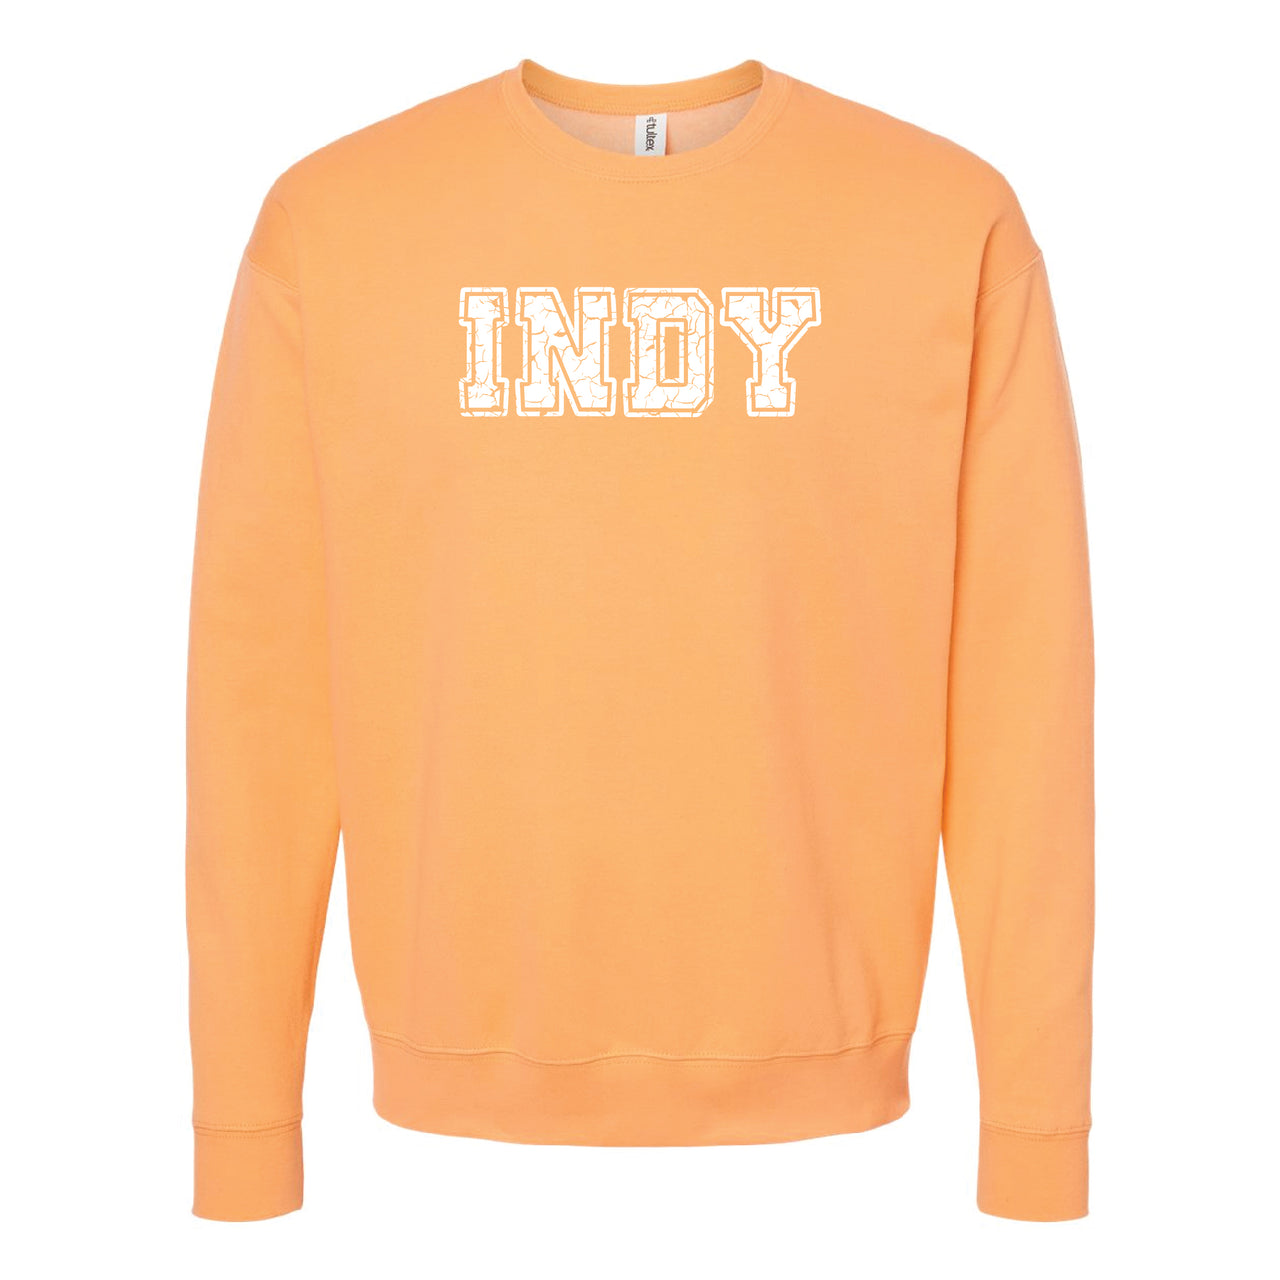 Unisex Fleece Crewneck Sweatshirt - Indy